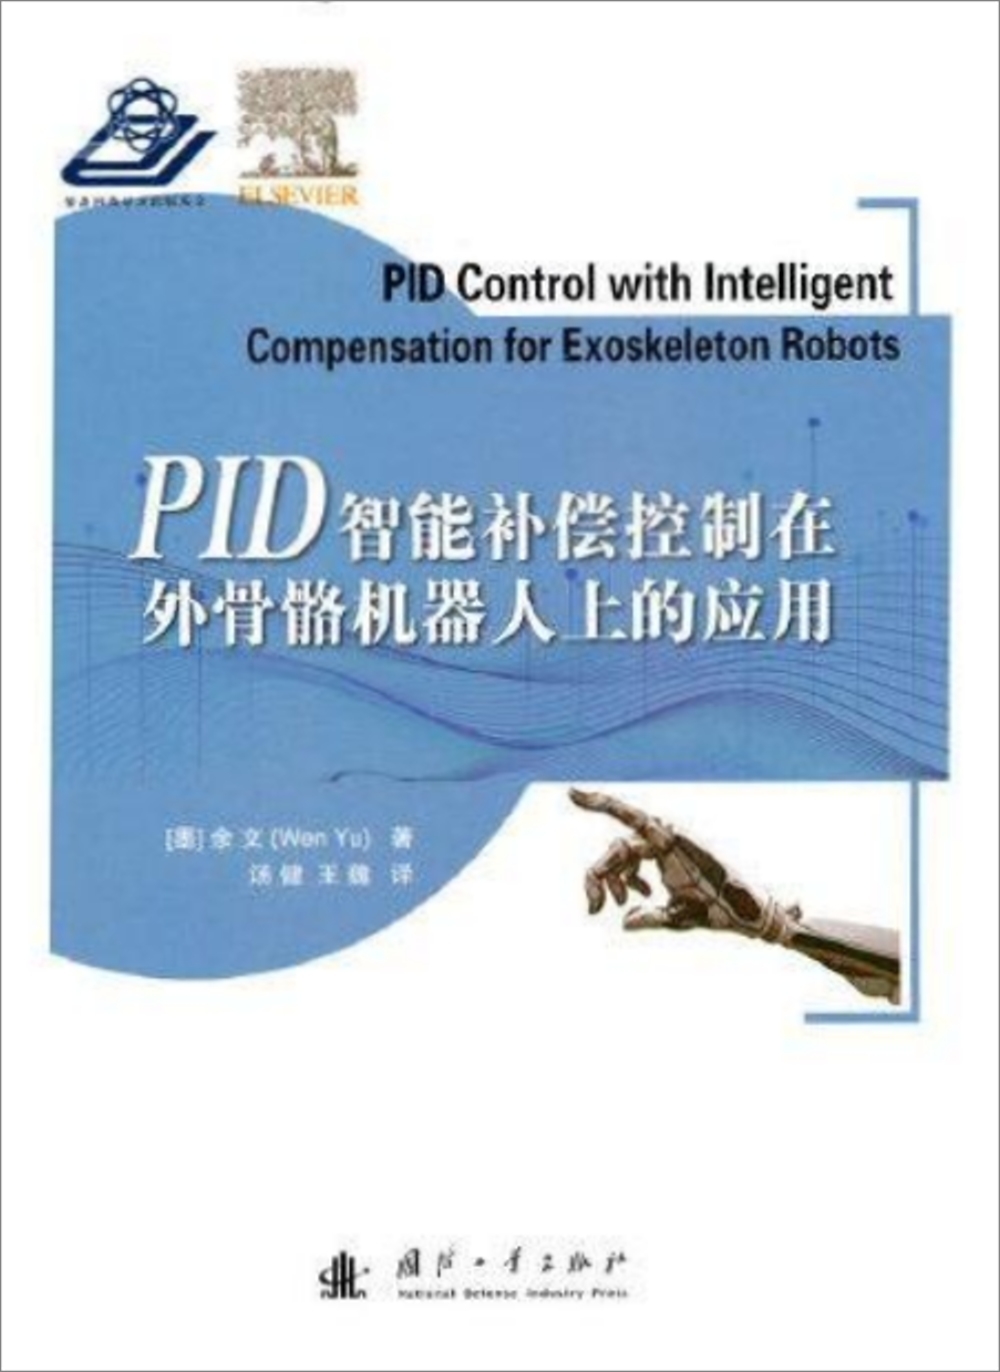 PID智能補償控制在外骨骼機器人上的應用